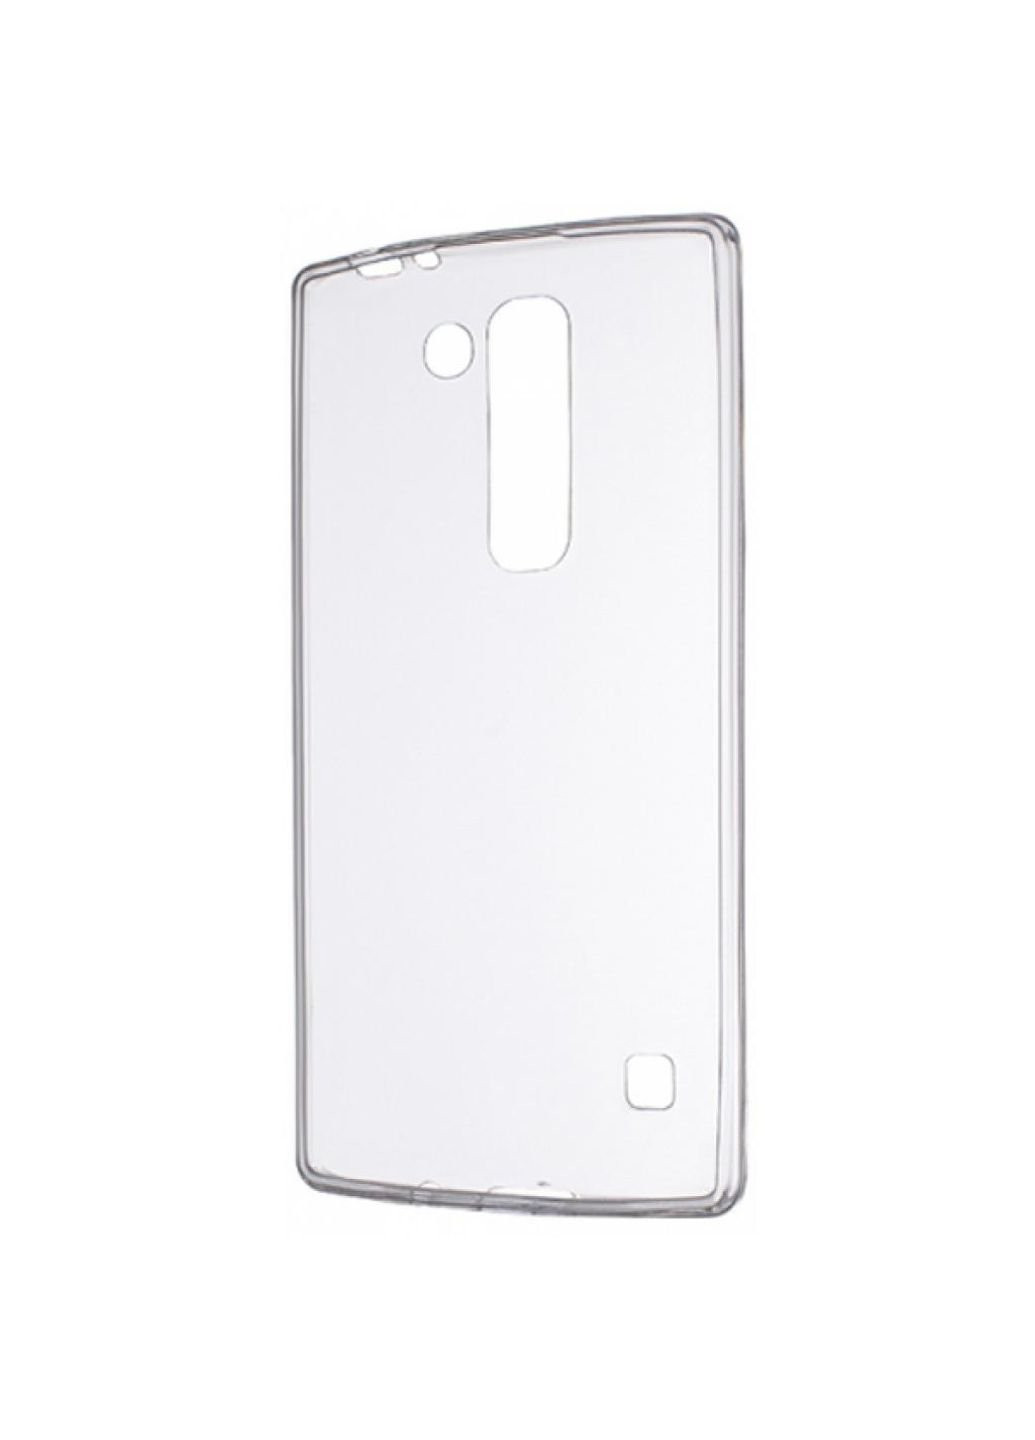 Чохол для мобільного телефону (смартфону) Ultra PU для LG Spirit LGH422 (Clear) (215562) Drobak (201492436)